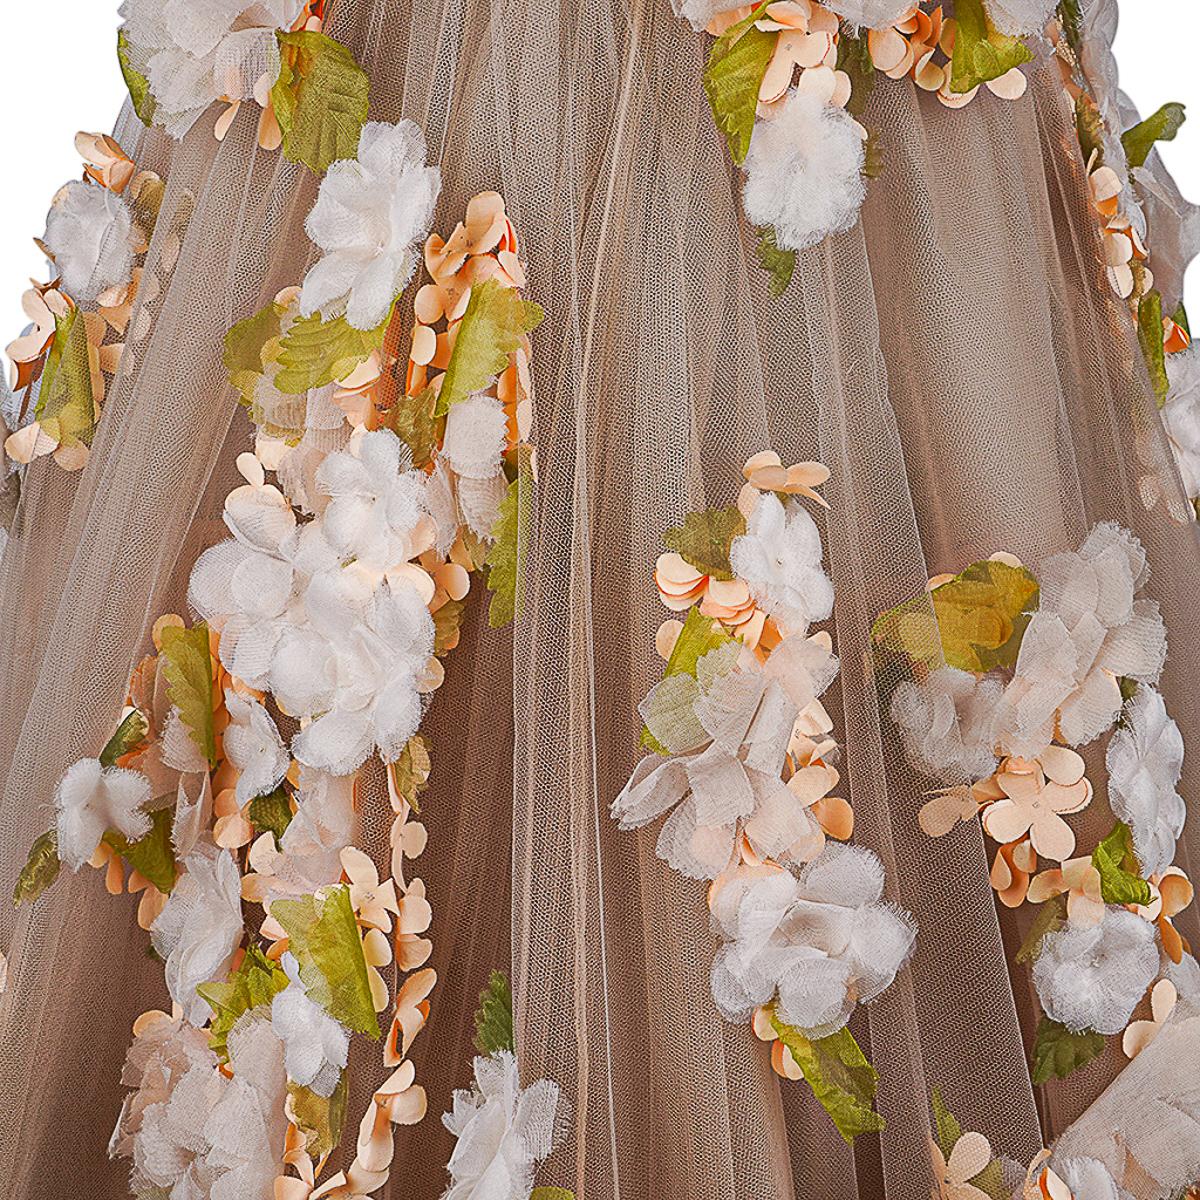 Valentino Trägerloses Empire-Kleid in Nude mit Blumenschmuck 1 von 2 Größe 0 8